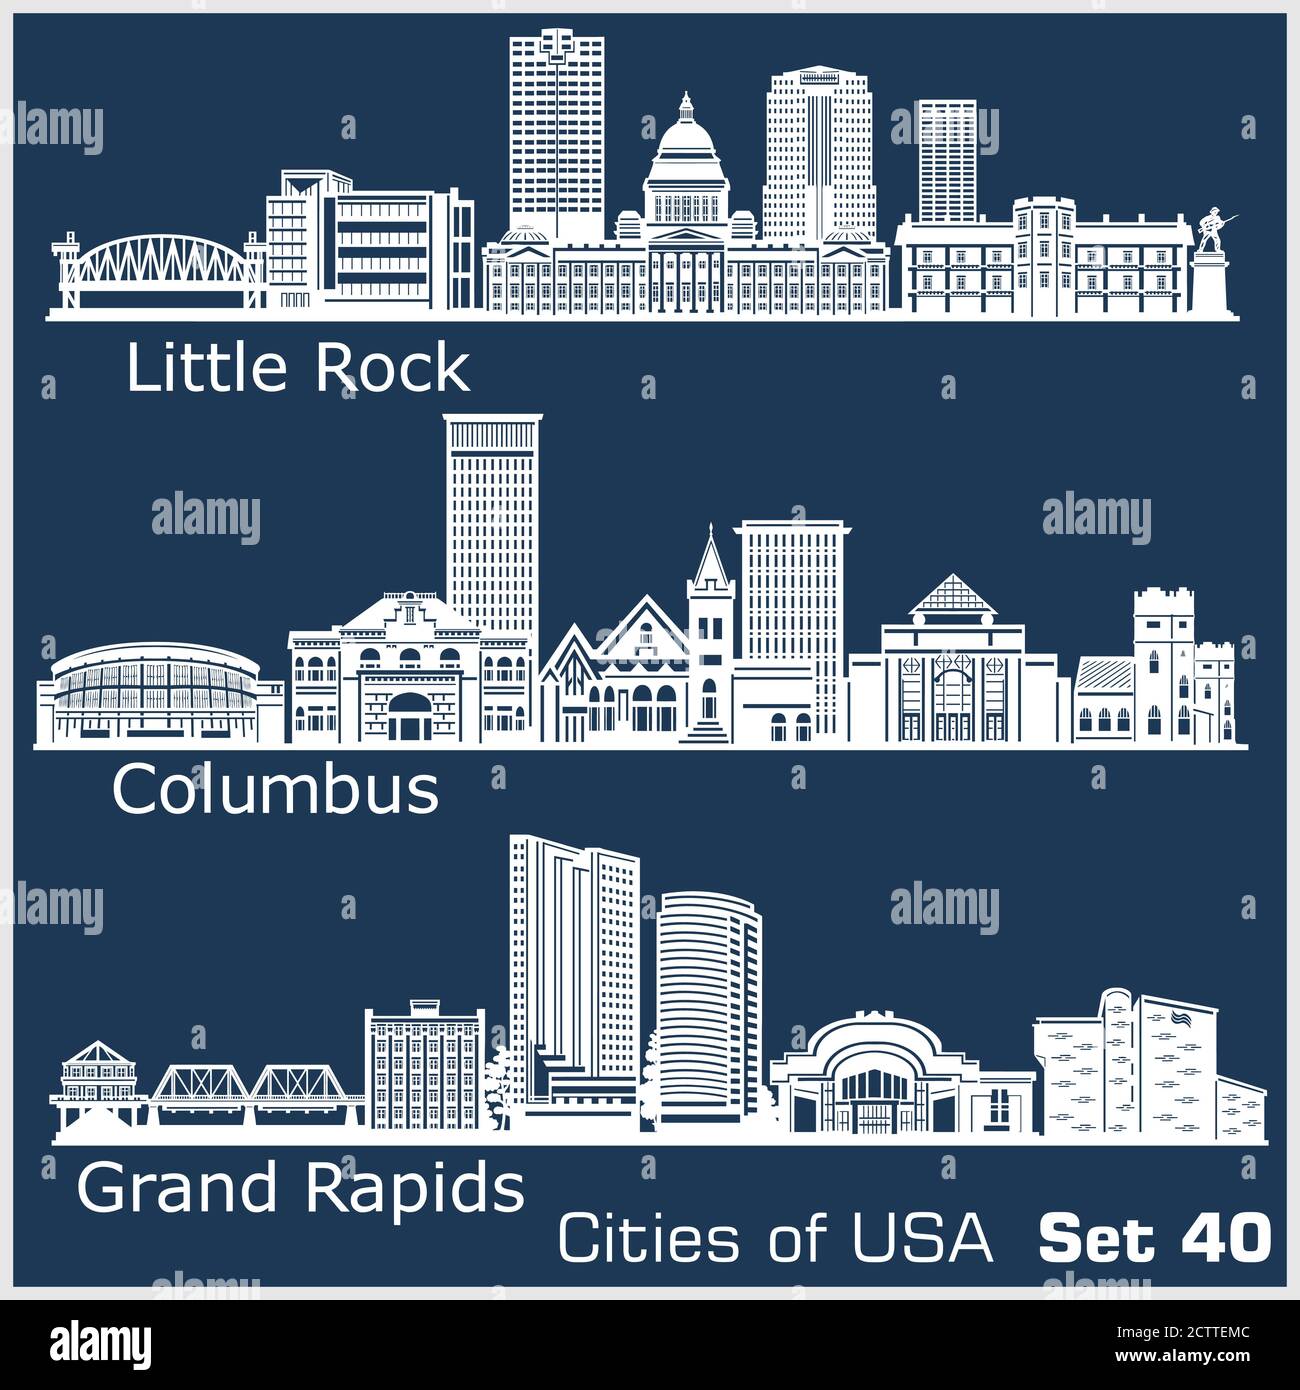 Villes des États-Unis - Grand Rapids, Columbus, Little Rock. Architecture détaillée. Illustration vectorielle tendance. Illustration de Vecteur